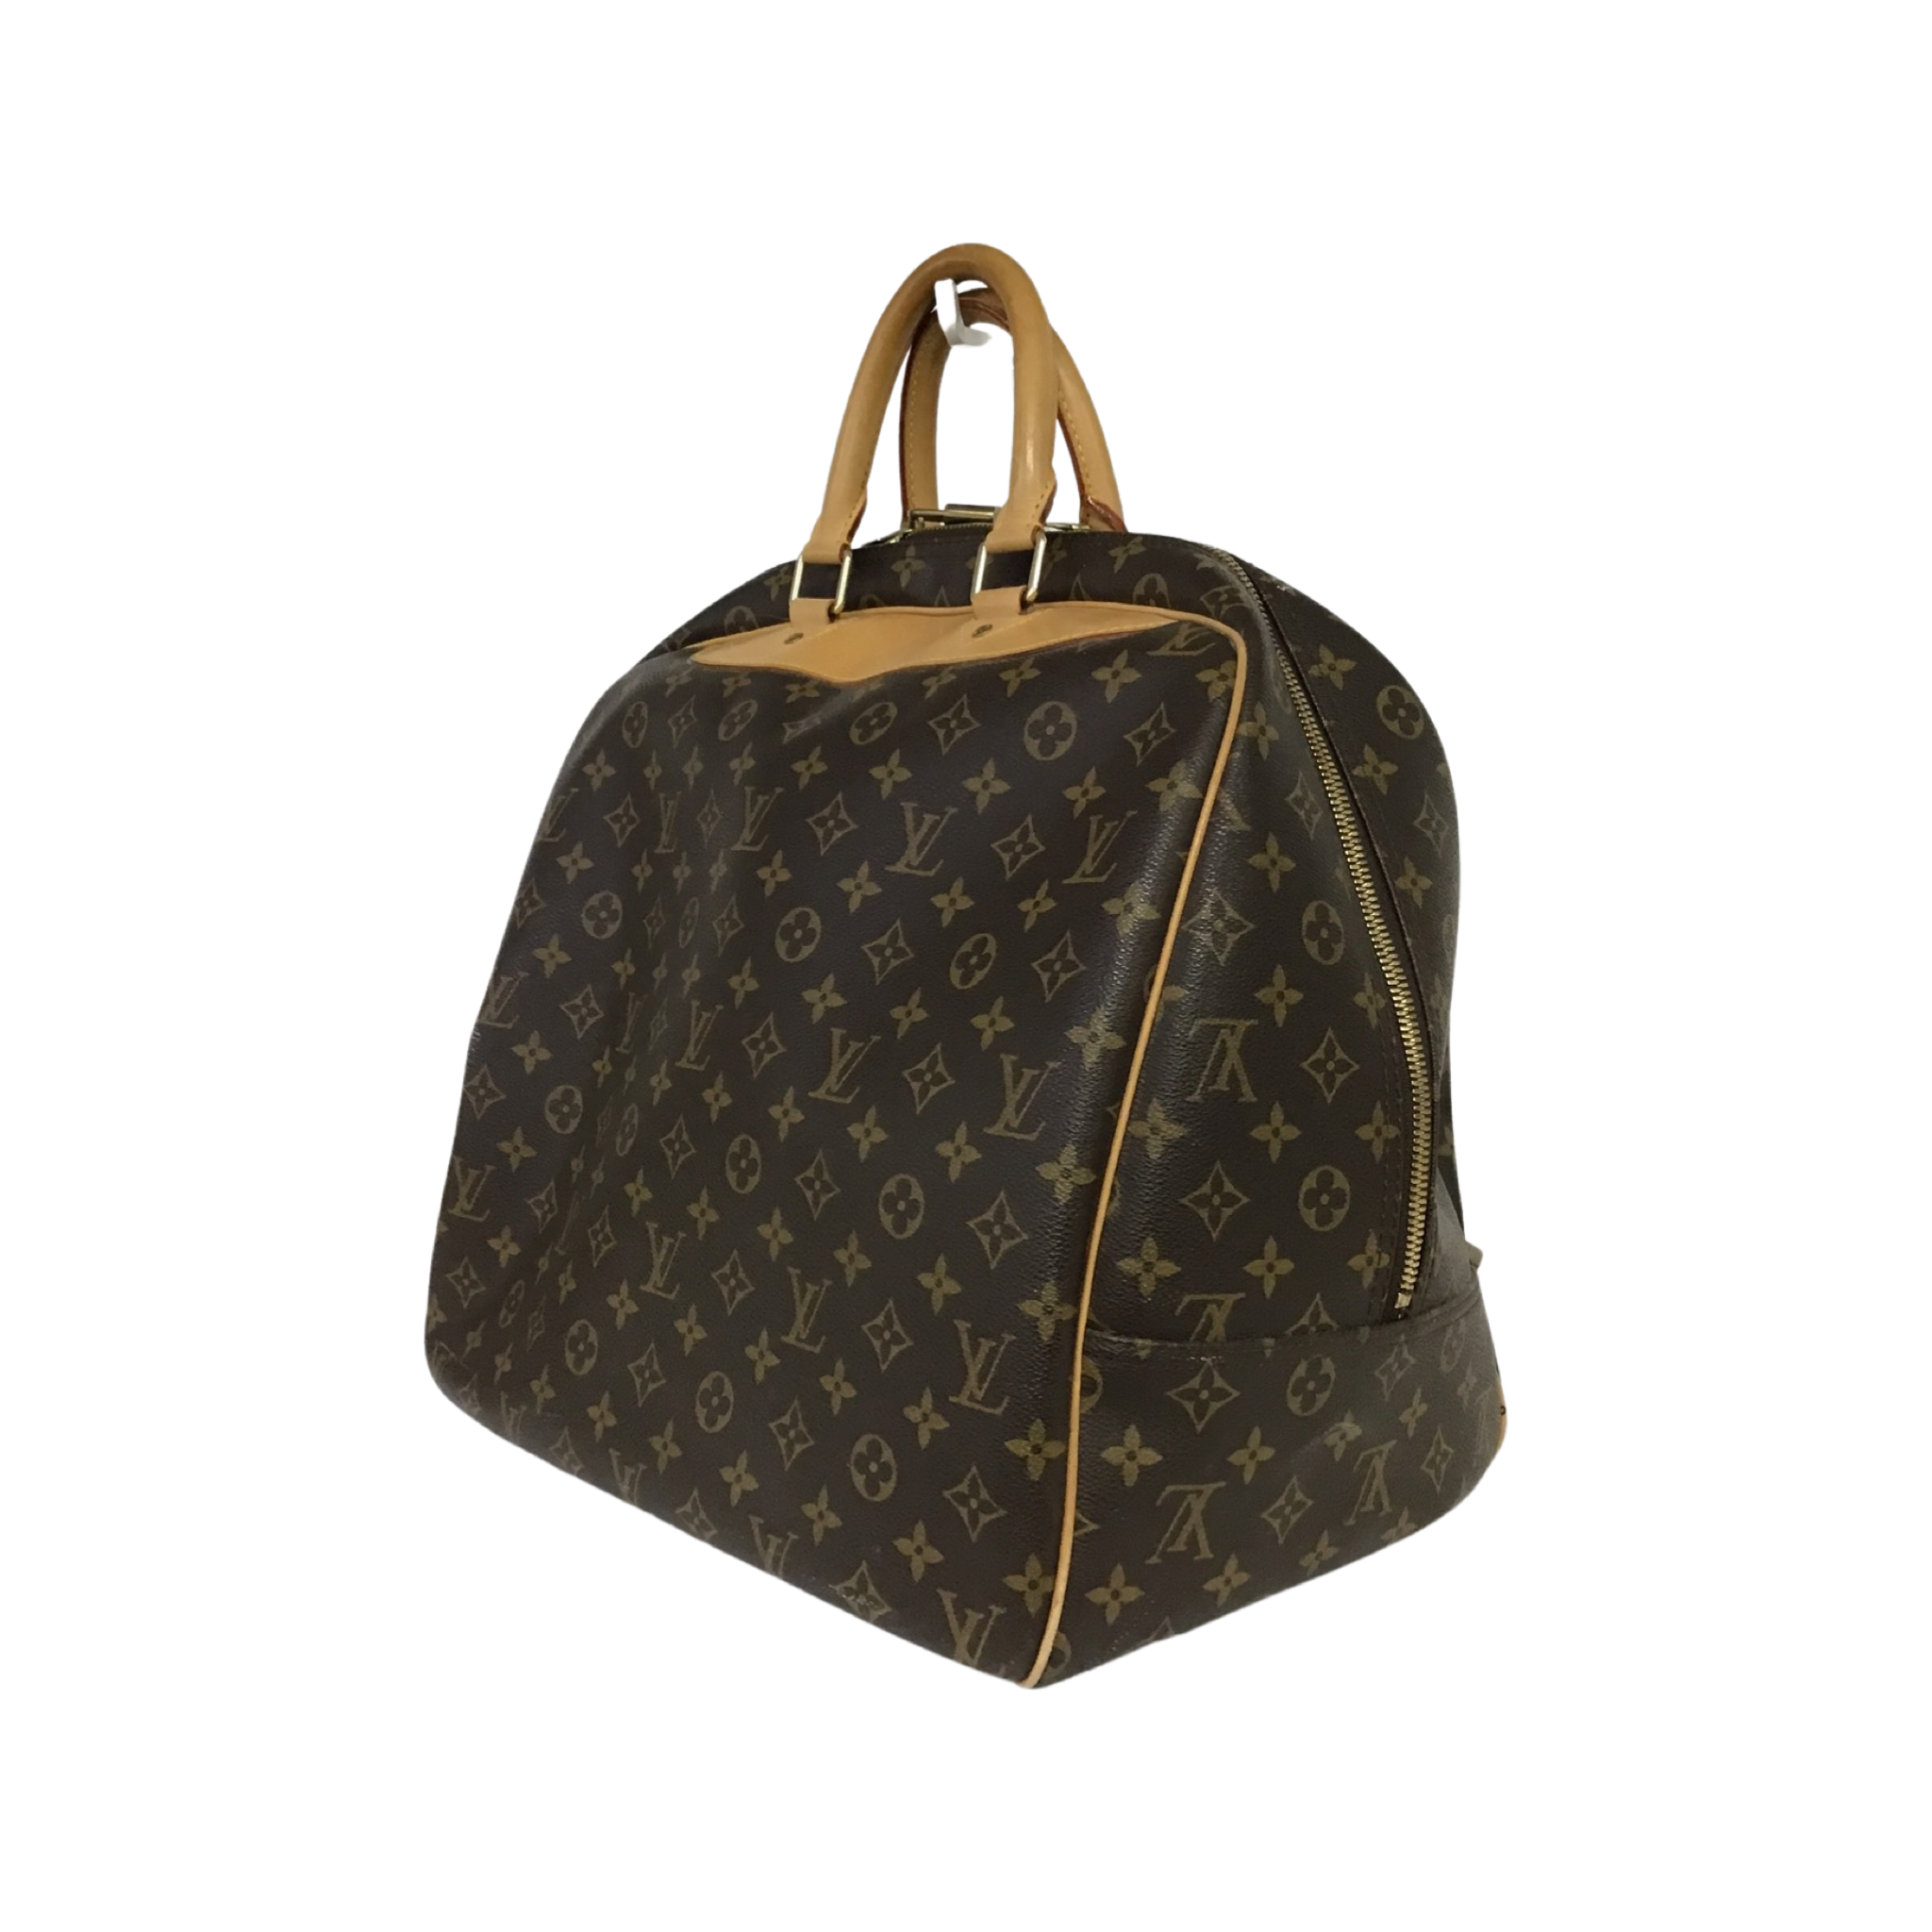 Louis Vuitton, A Louis Vuitton Evasion travel bag width 38cm